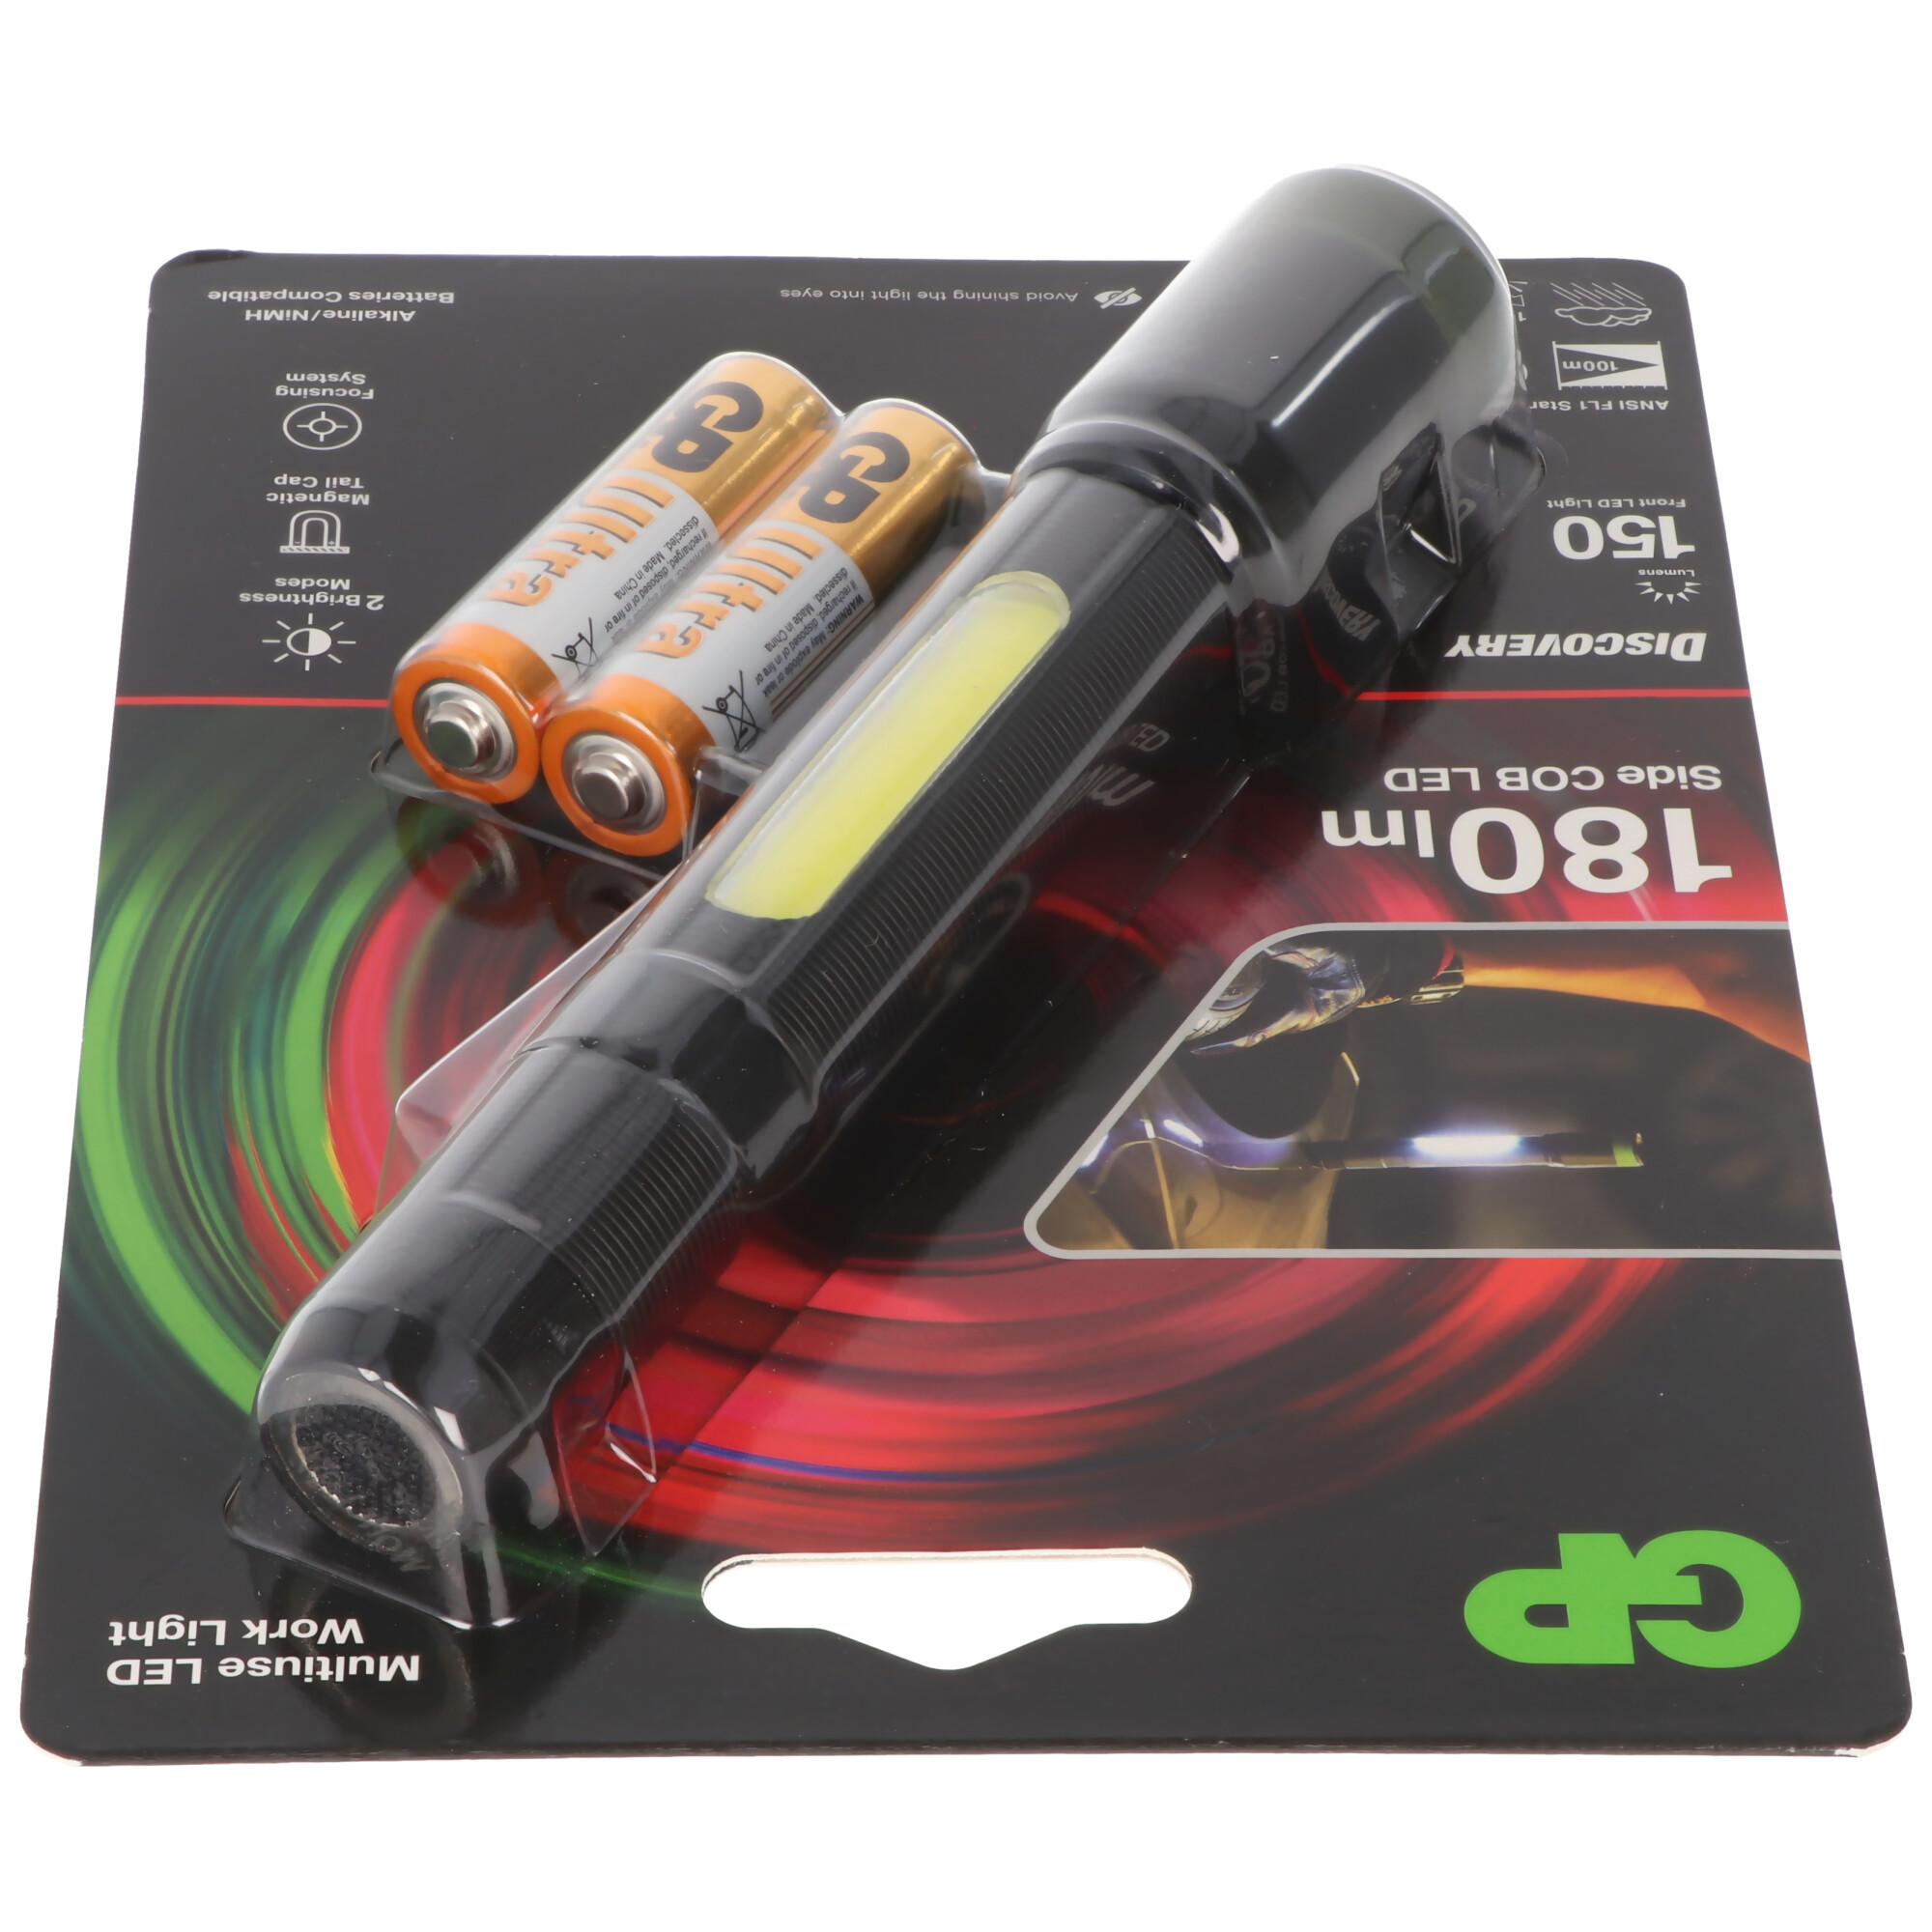 Taschenlampe GP C33 150 Lumen inklusive 2x AA 1,5V Mignon Batterien